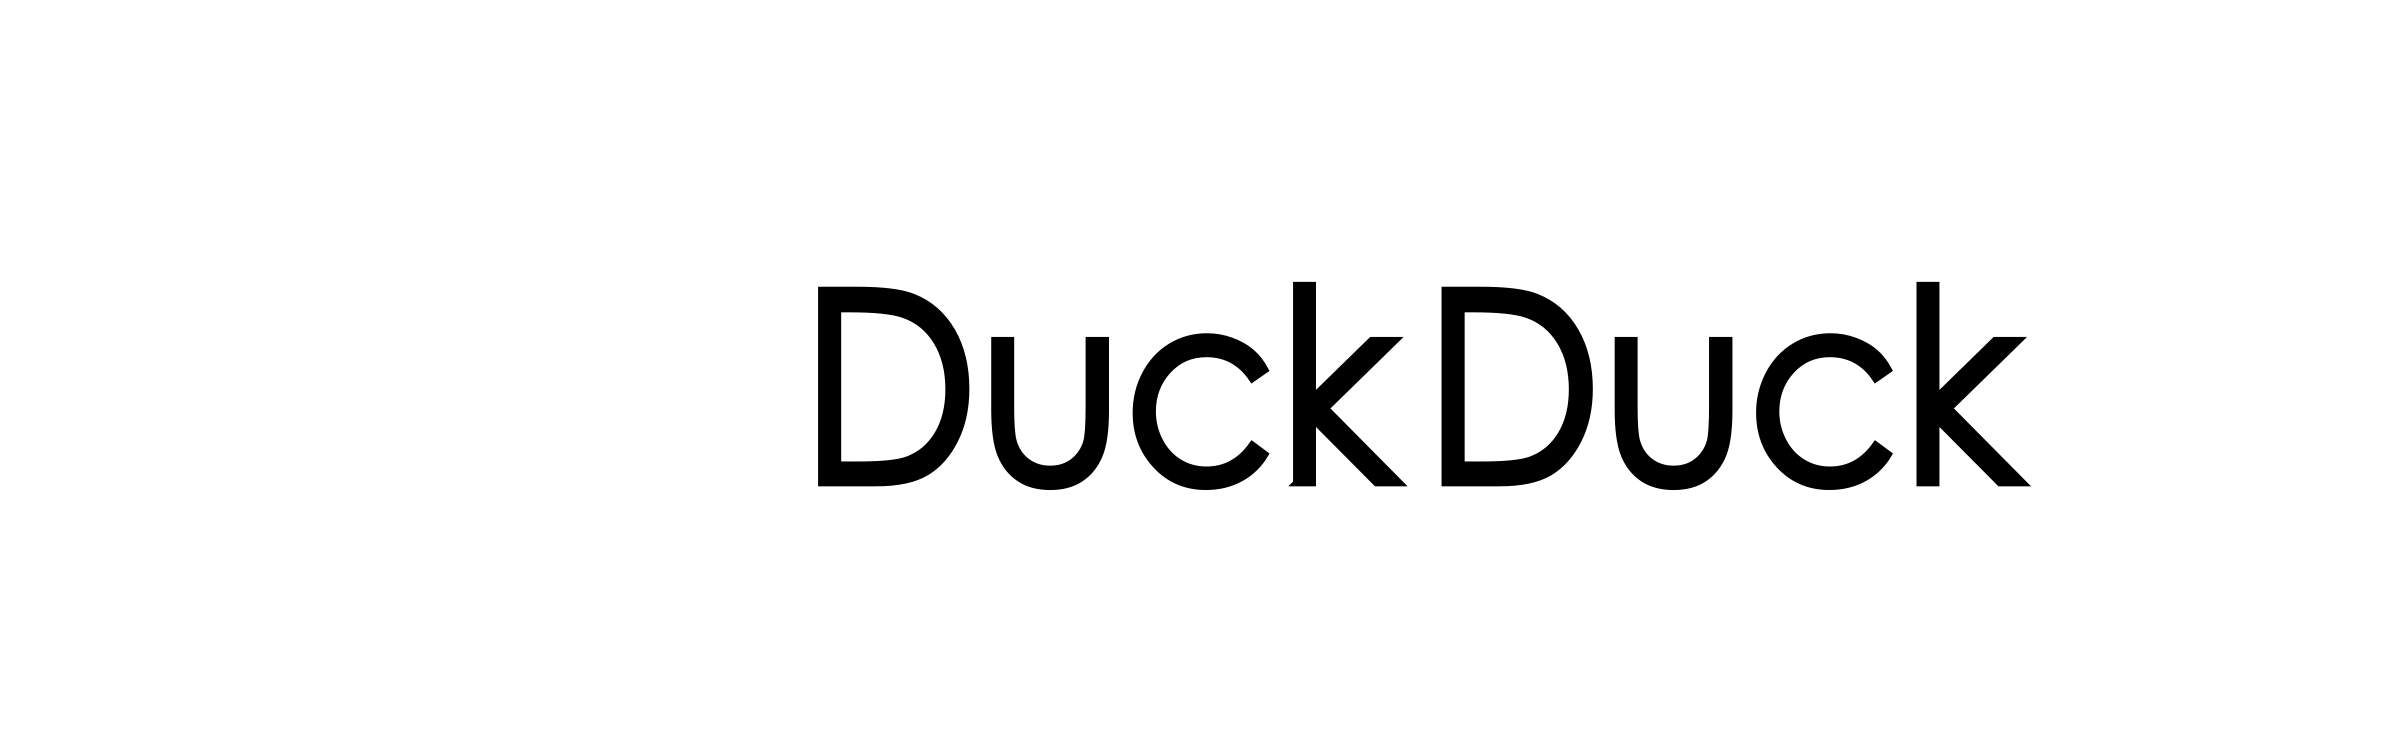 DuckDuckGo Logo - DuckDuckGo 2 Logo PNG Transparent & SVG Vector - Freebie Supply